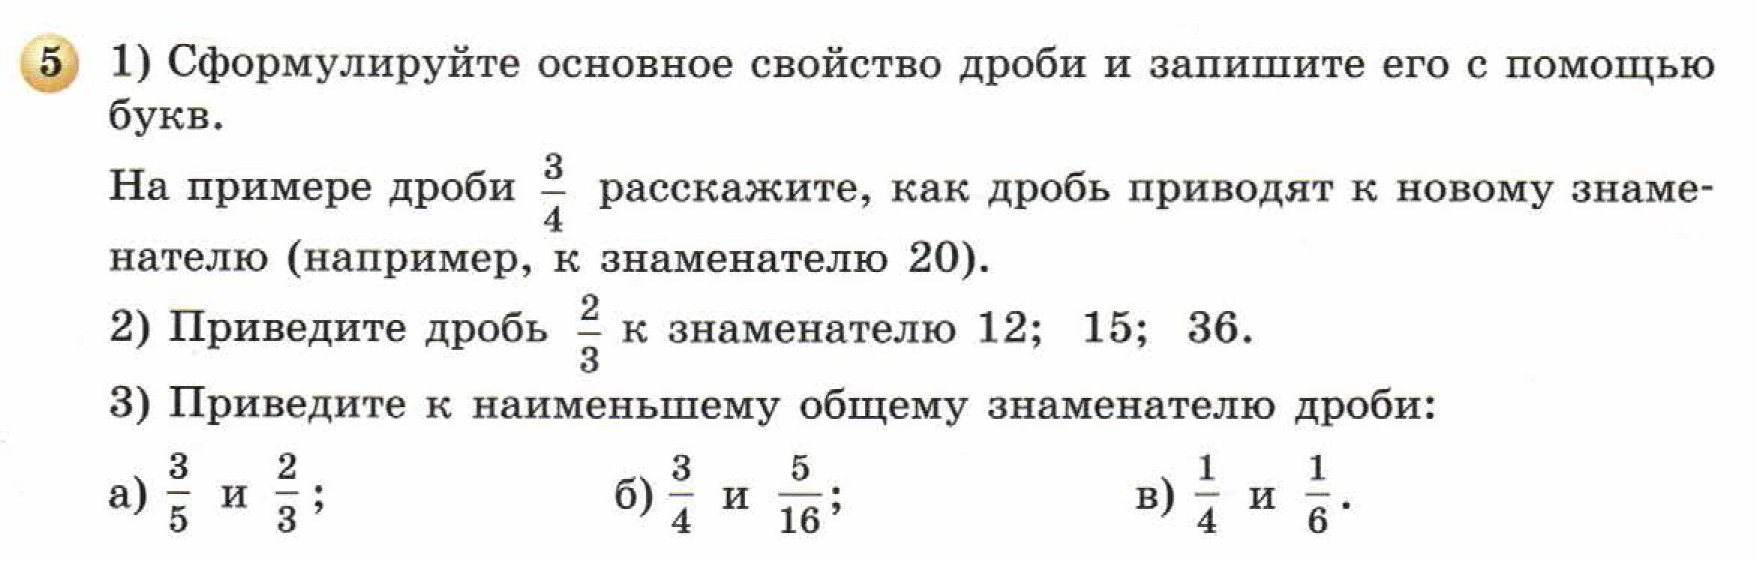 решебник по математике Бунимович 5 класс условие итоги главы 8 задание 5